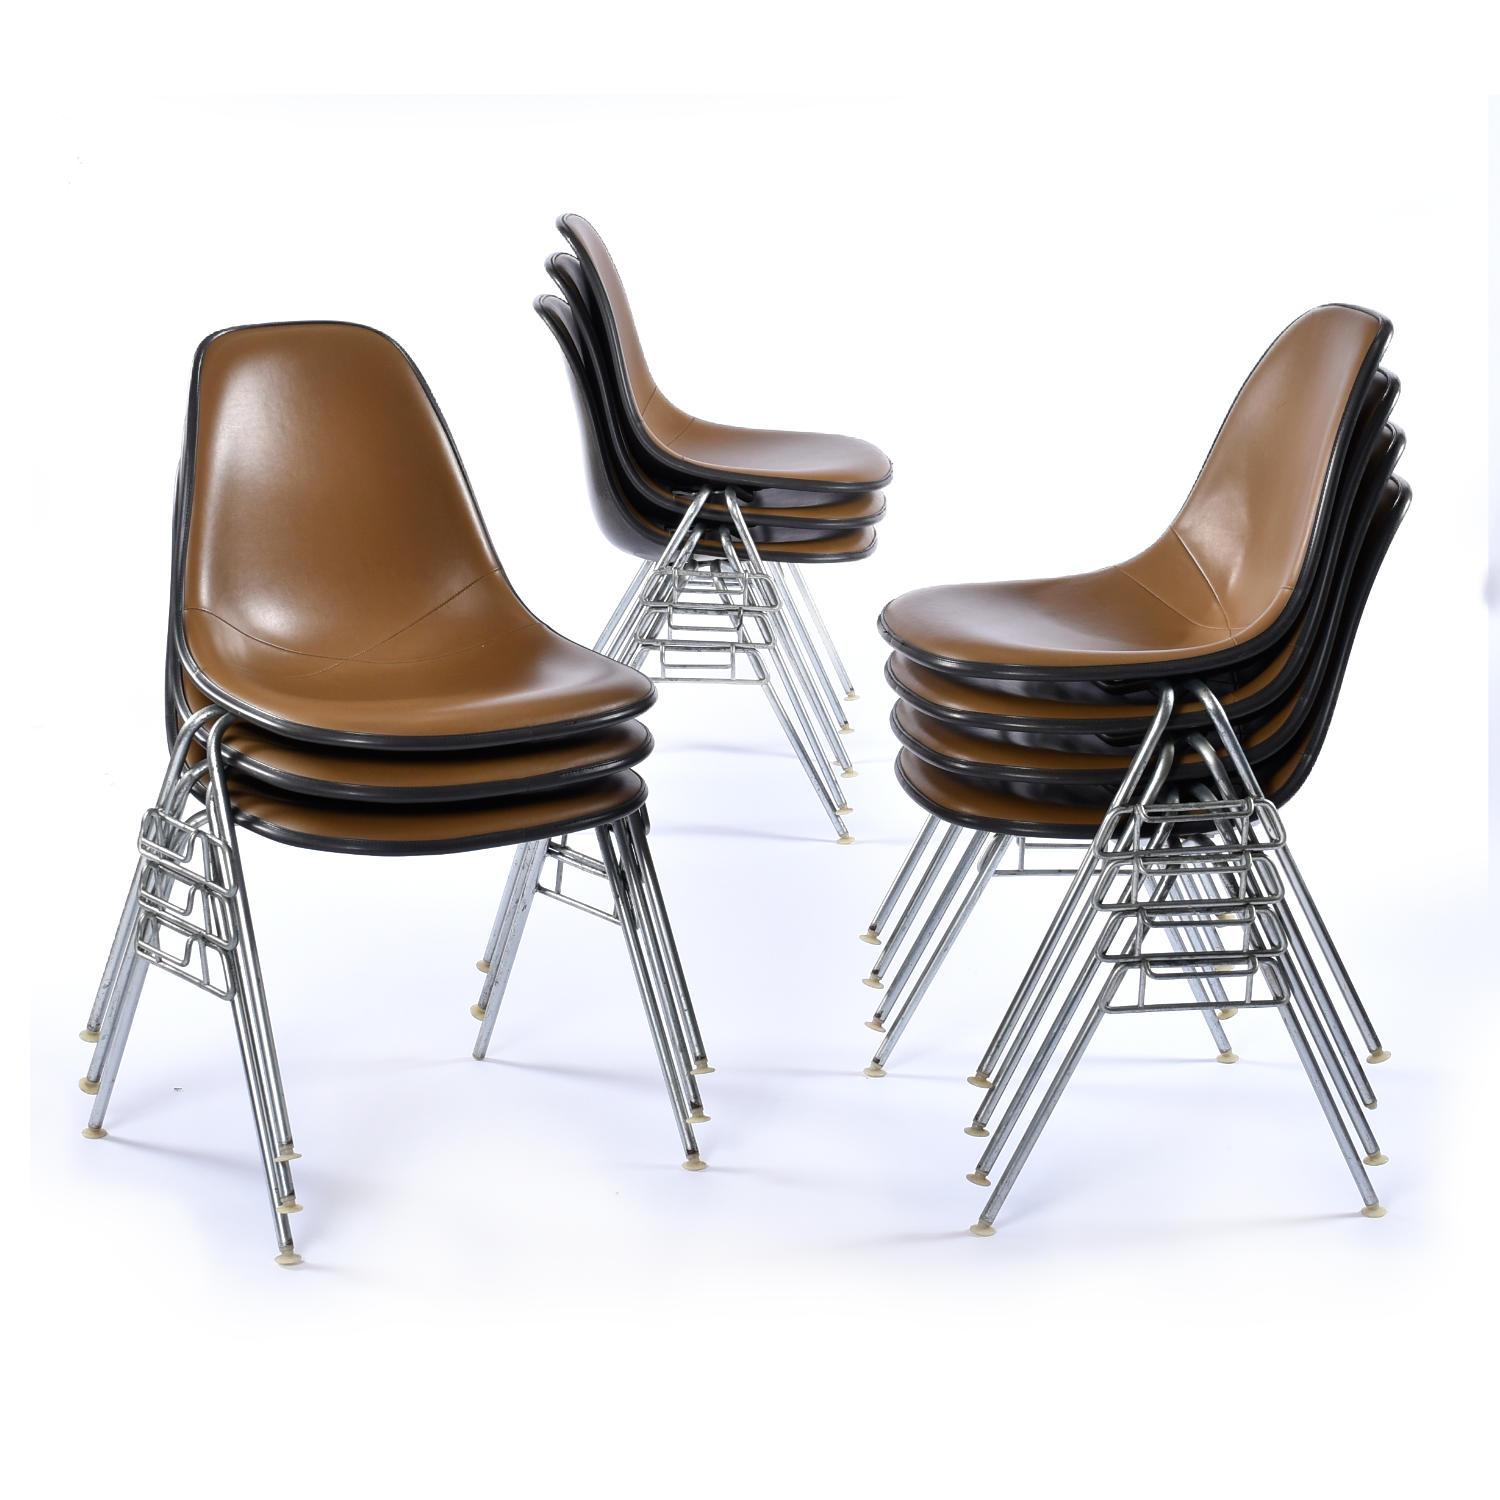 Verkauft als eine Gruppe von 6 Stühlen. 20 einzelne Stühle sind verfügbar. Kontaktieren Sie uns, wenn Sie eine individuelle Menge benötigen.

Stapelbare Eames-Glasfaserschalenstühle mit original braunen Naugahyde-Pads. Die berühmten Charles und Ray